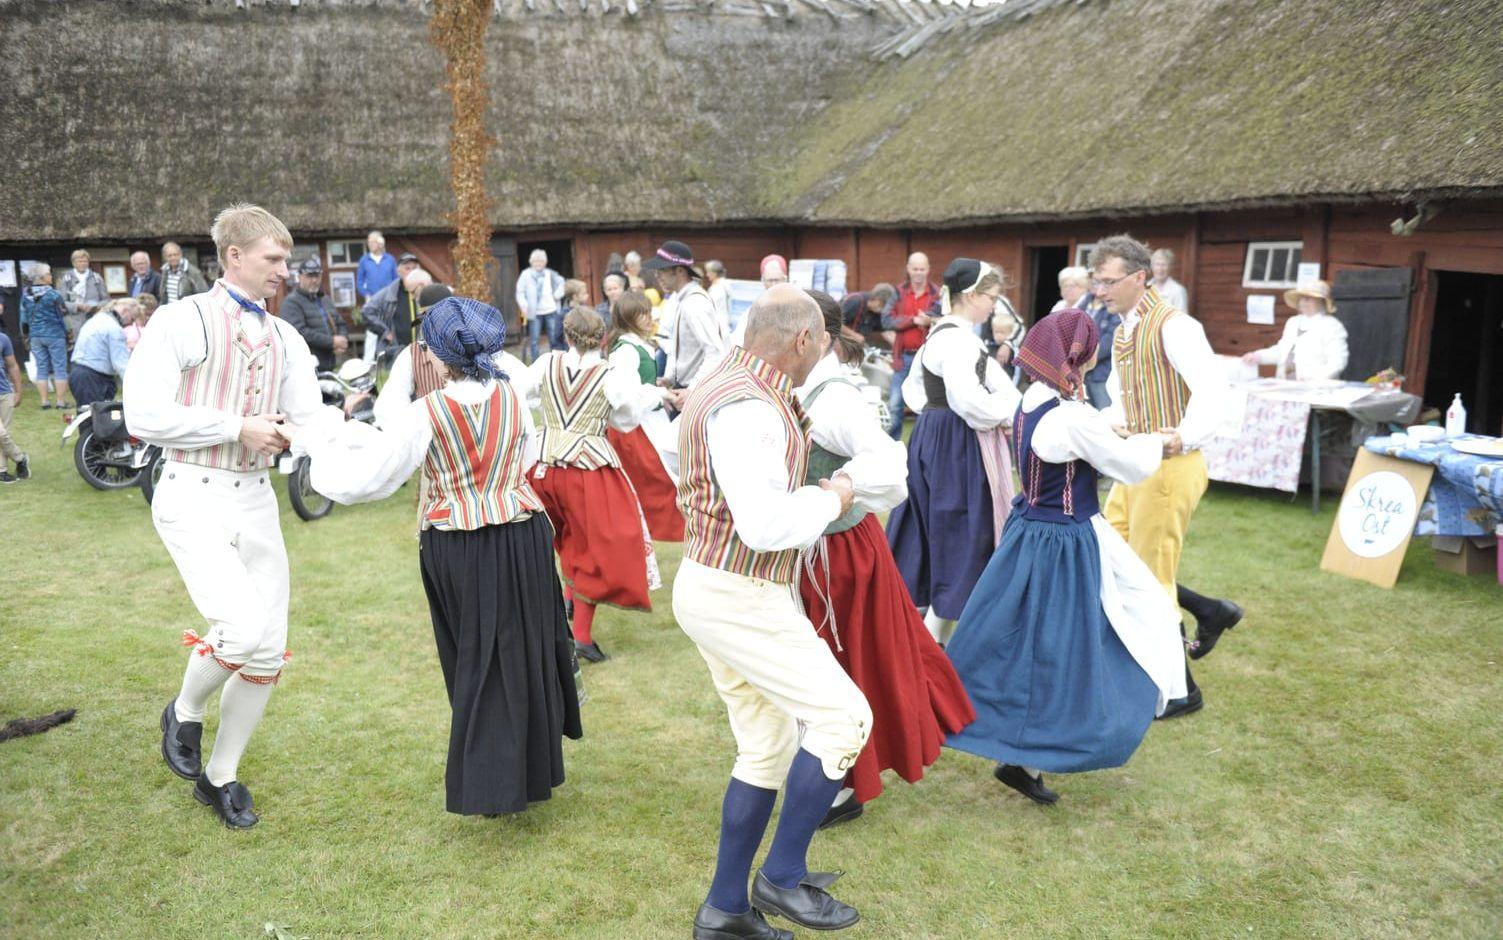 Folkdanslaget Falkringen bjöd på fart och färg med traditionella folkdanser